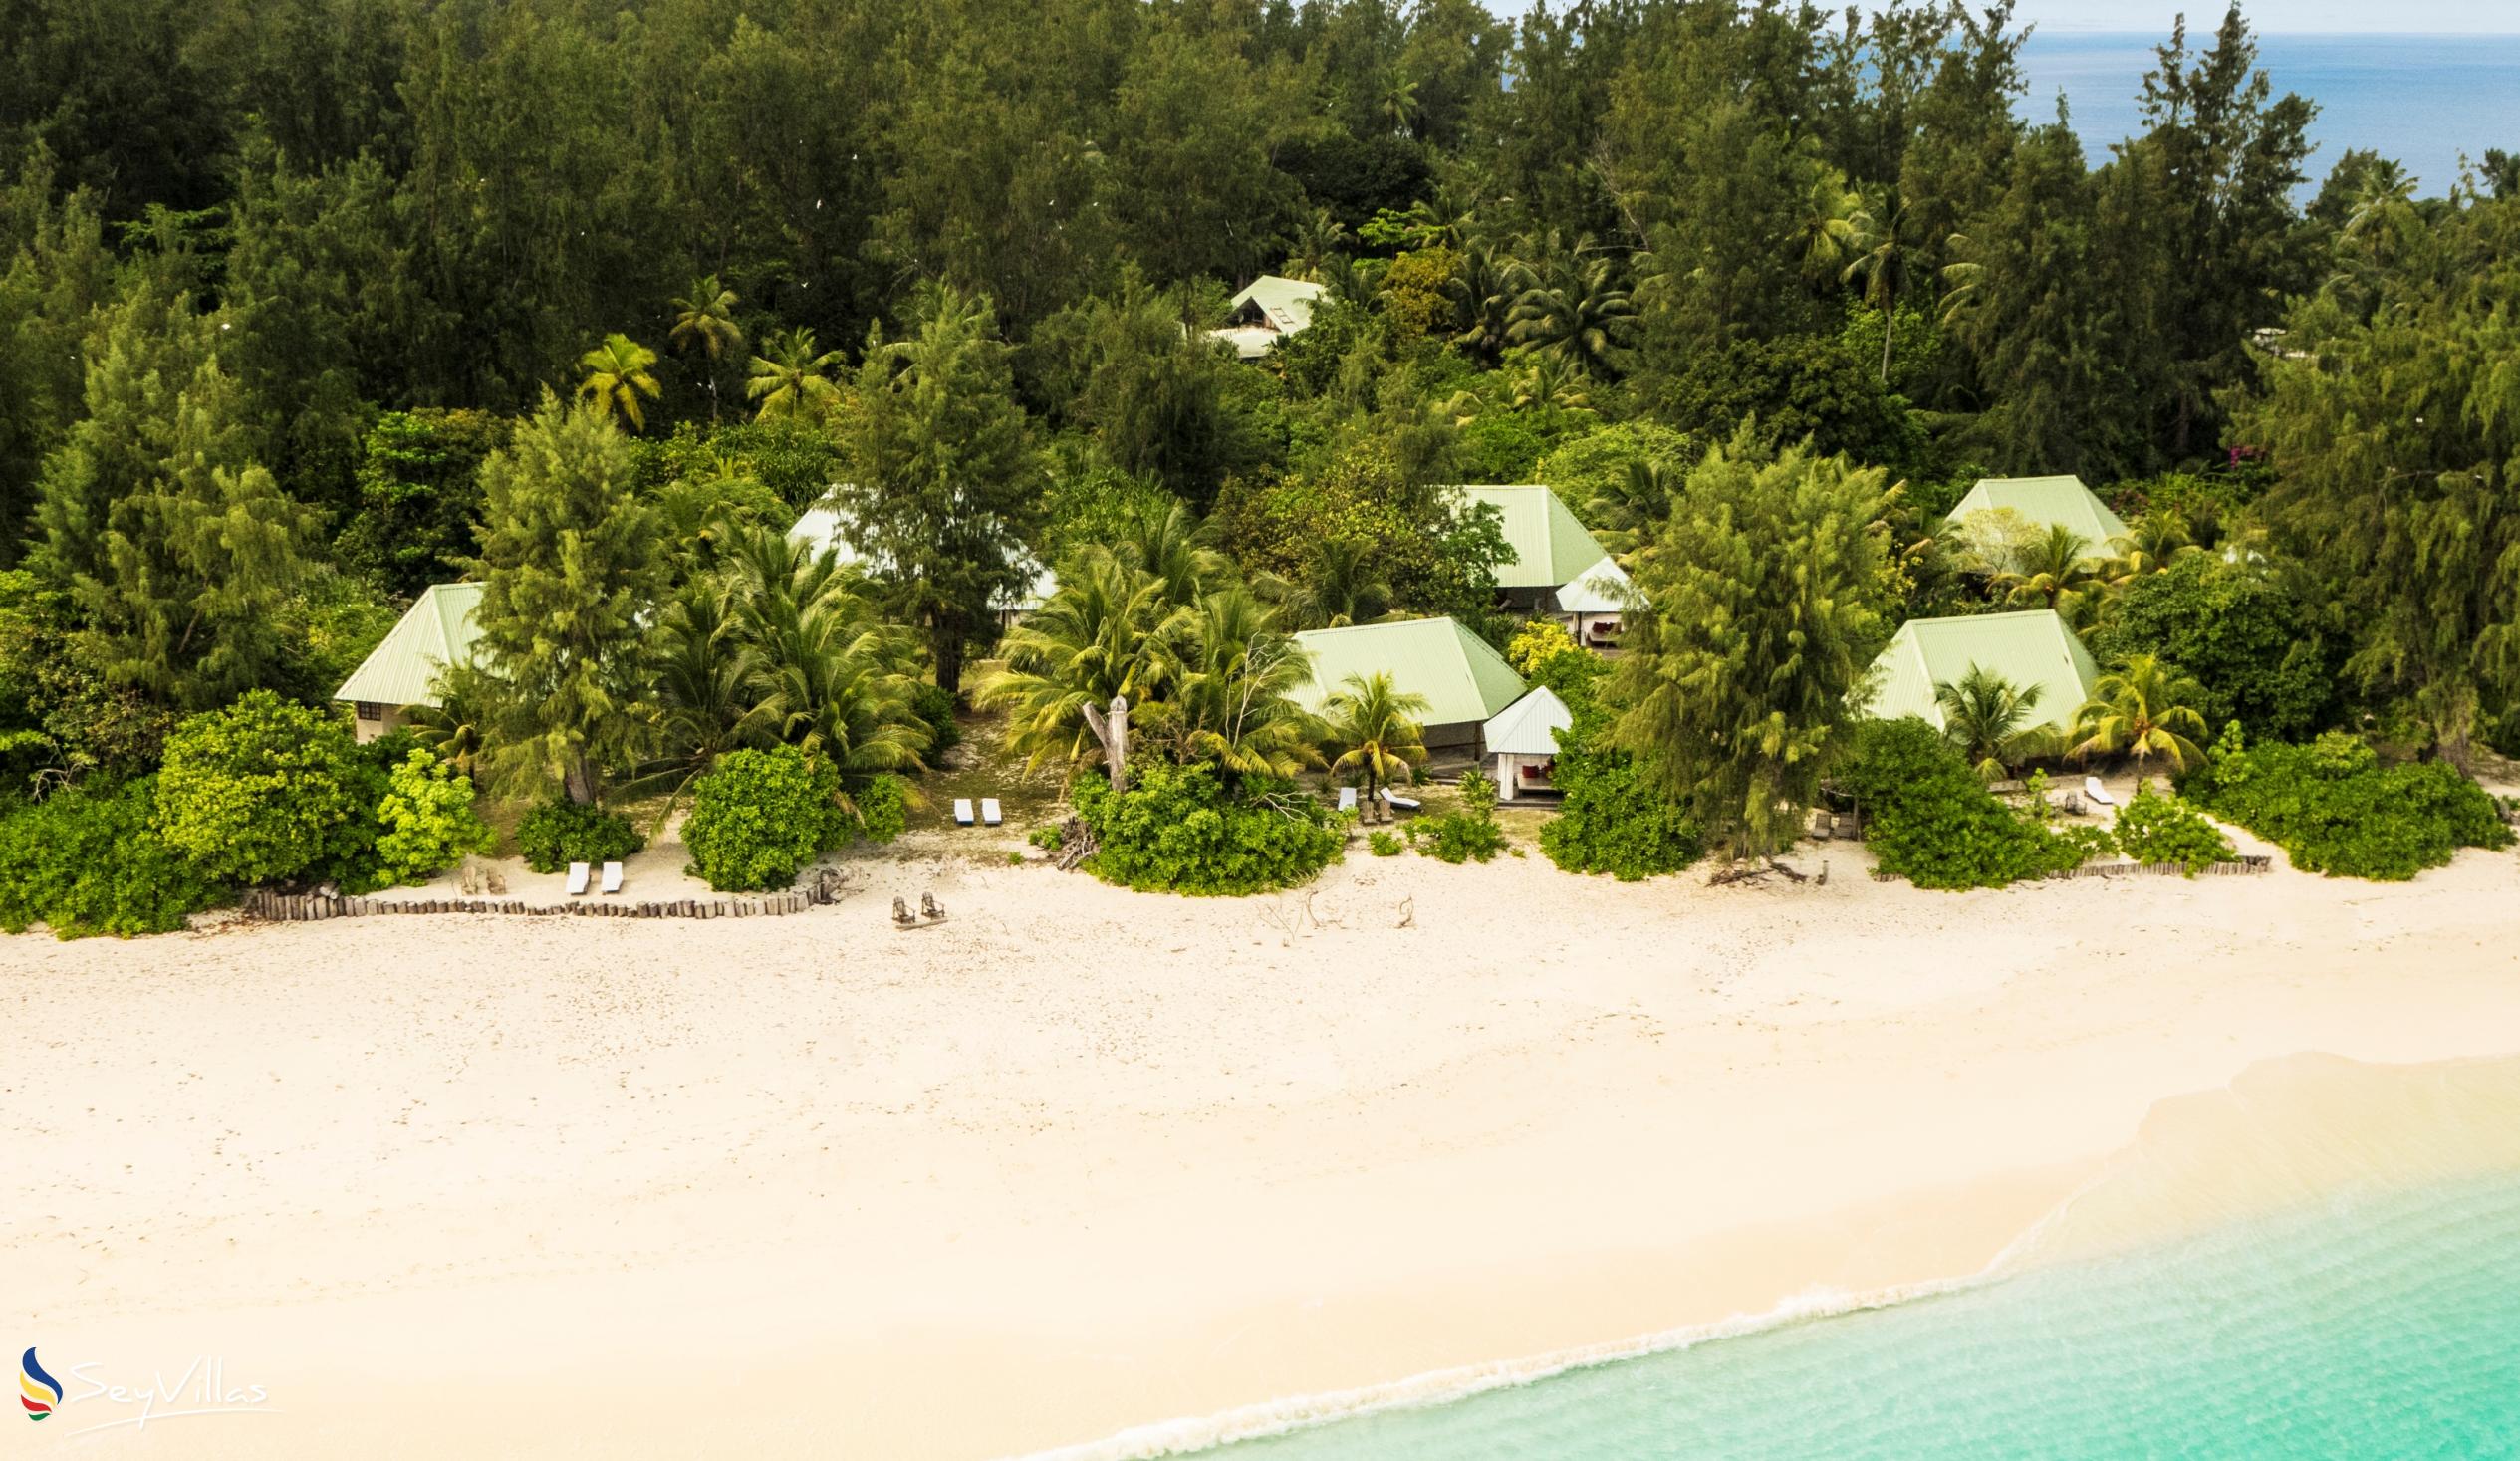 Foto 2: Denis Private Island - Aussenbereich - Denis Island (Seychellen)